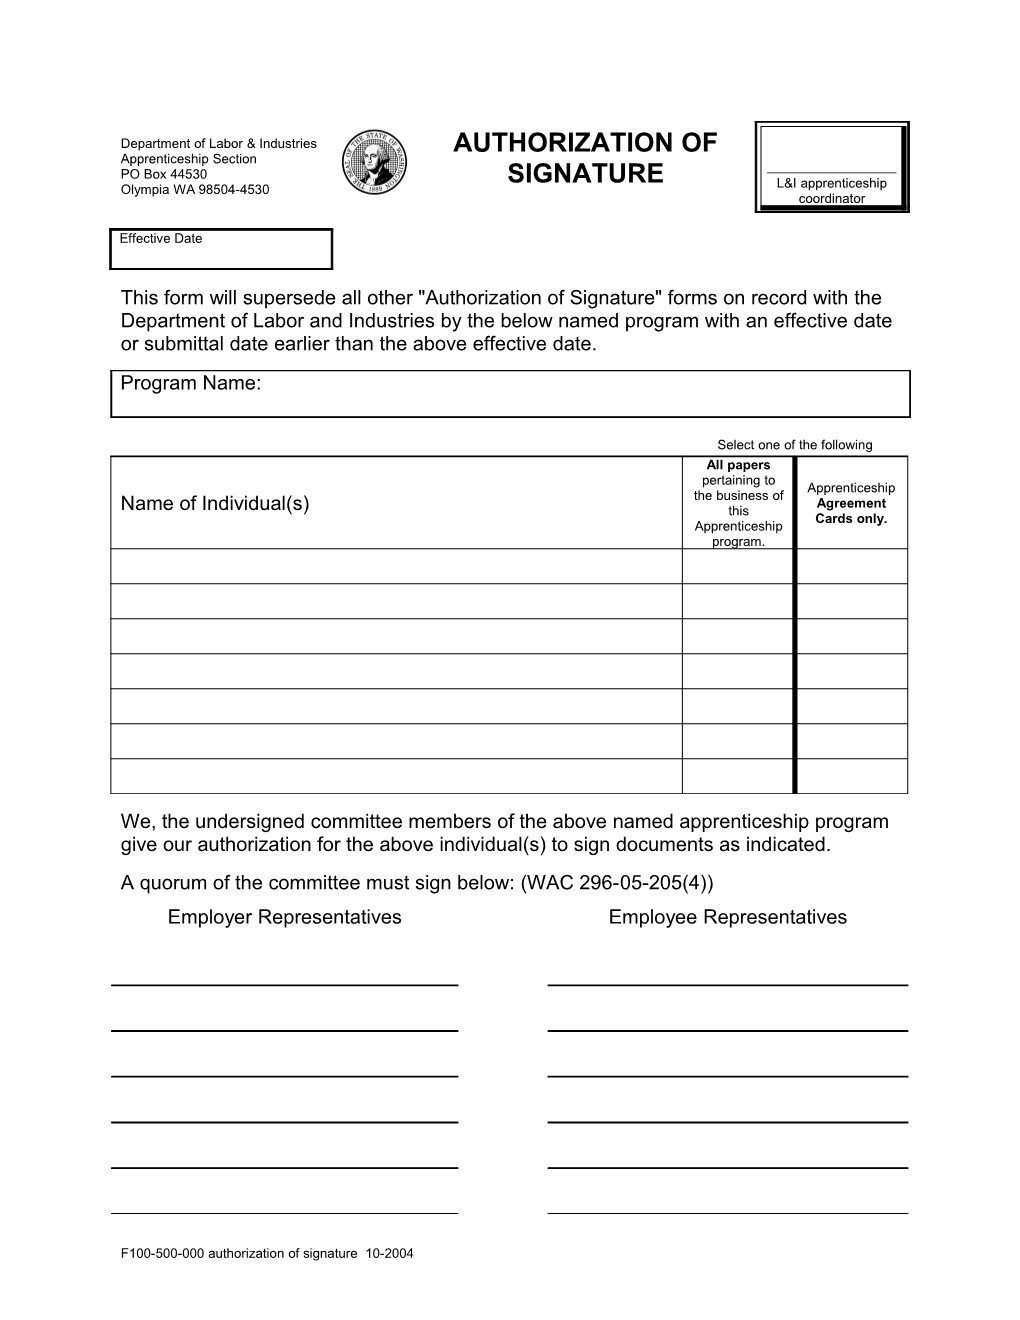 F100-500-000 Authorization of Signature